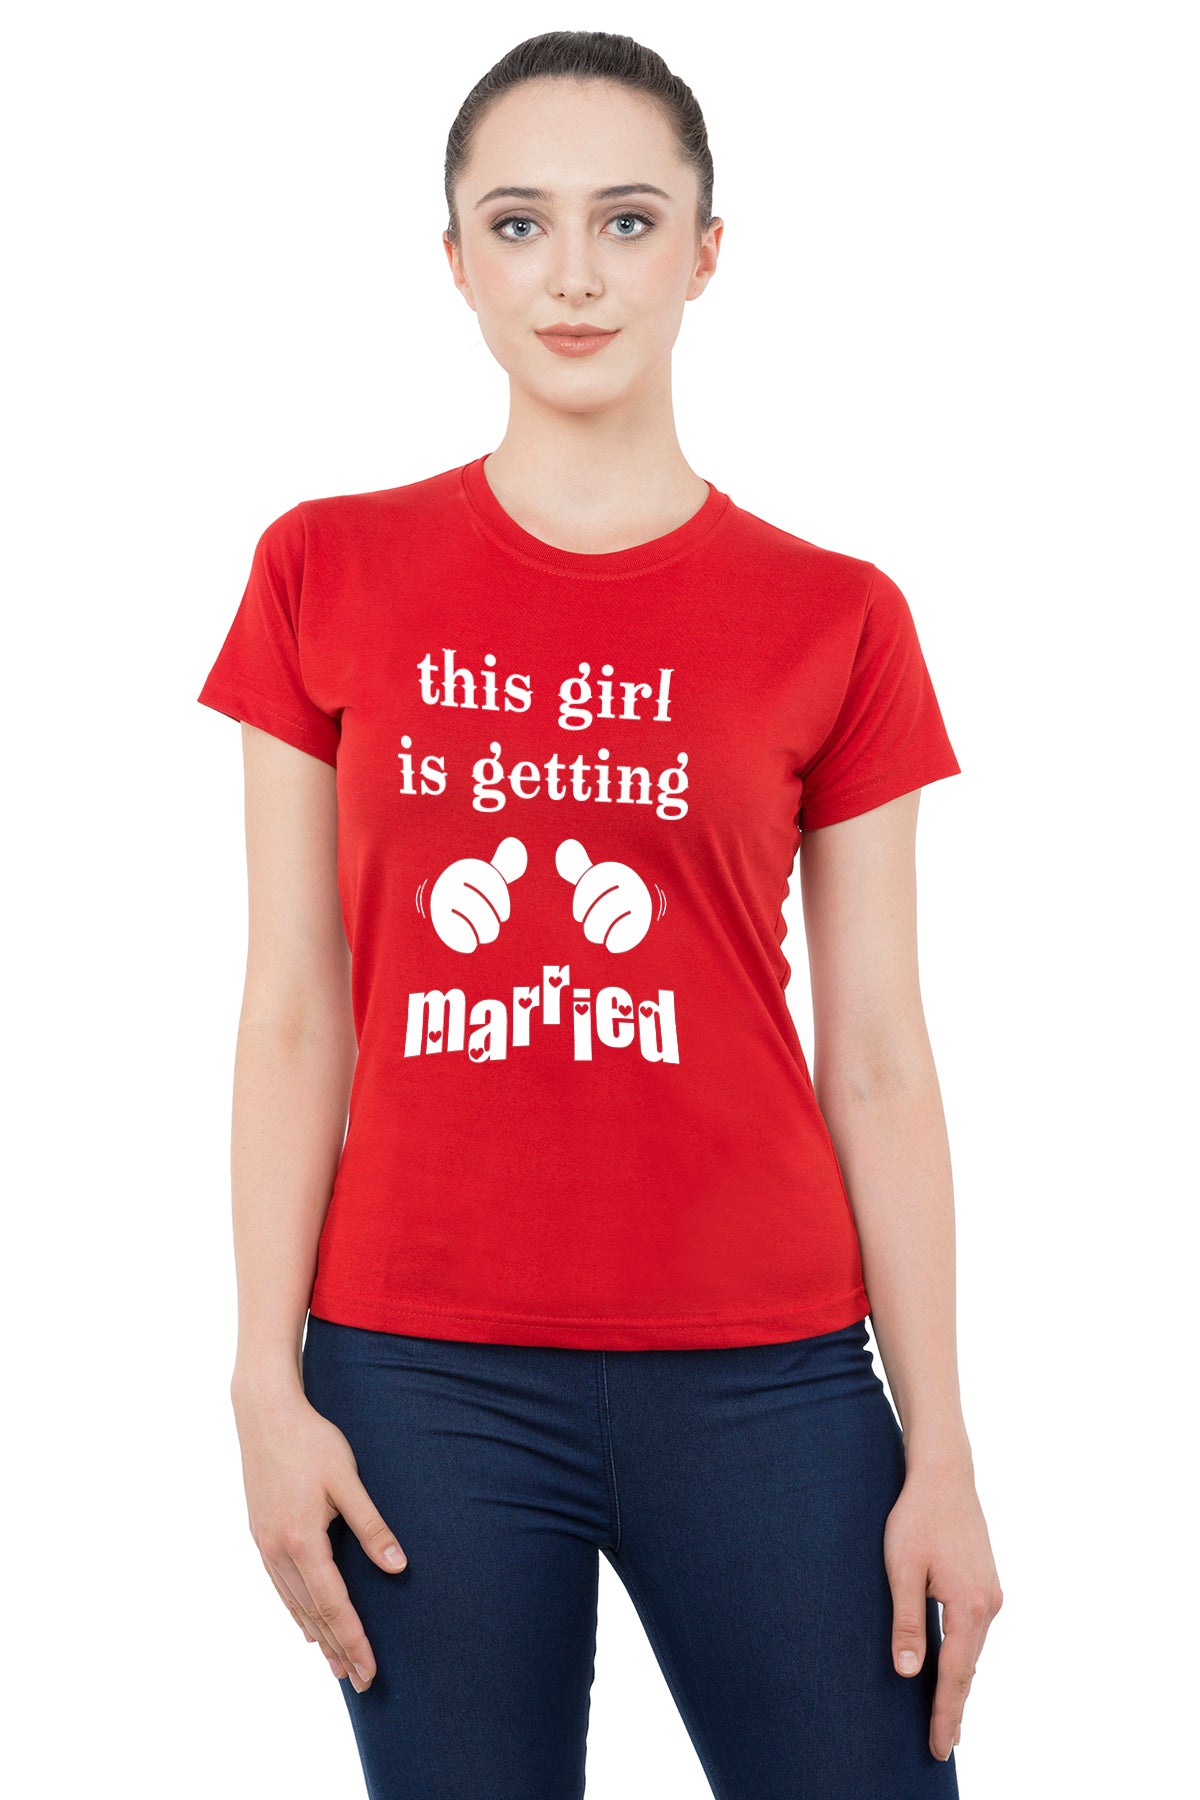 Bride Groom t shirt|wedding tshirts|Couple T shirts- Red 15